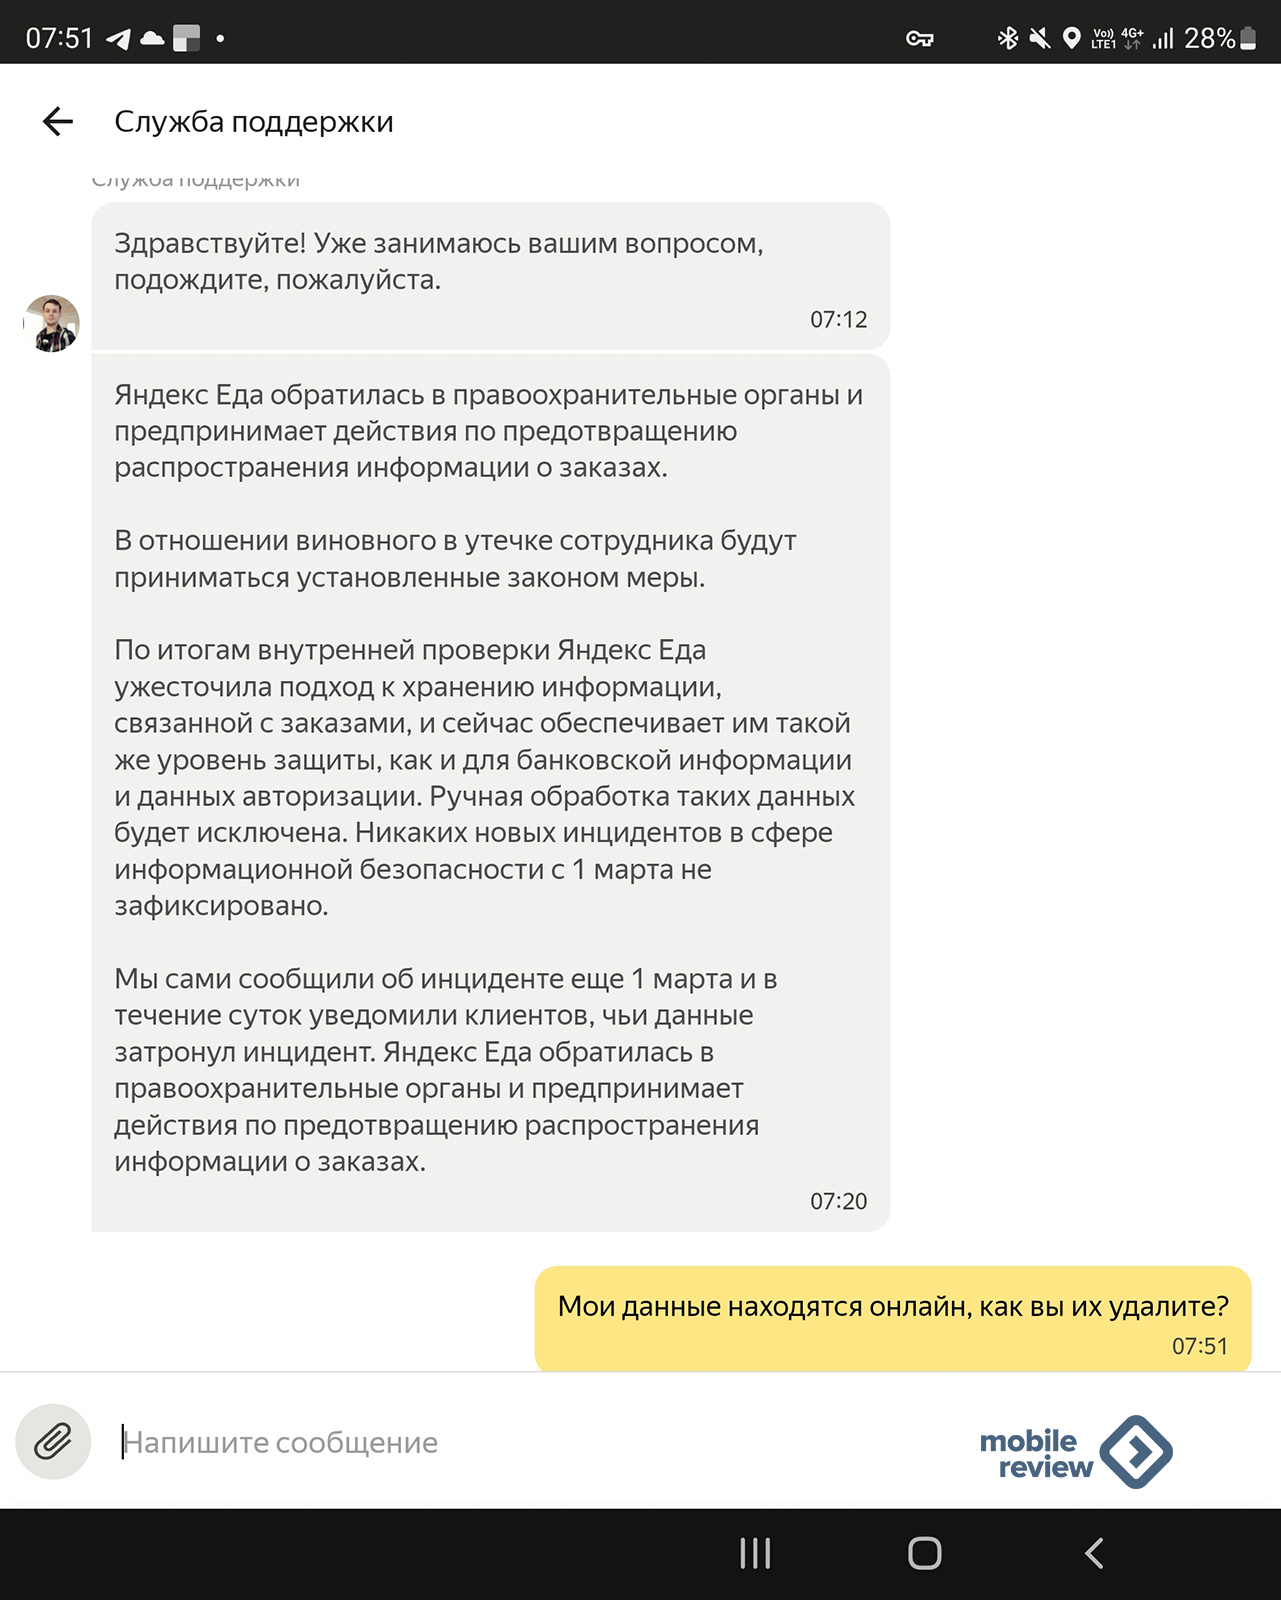 Утечка данных в сервисе «Яндекс.Еда» — проблема личных данных